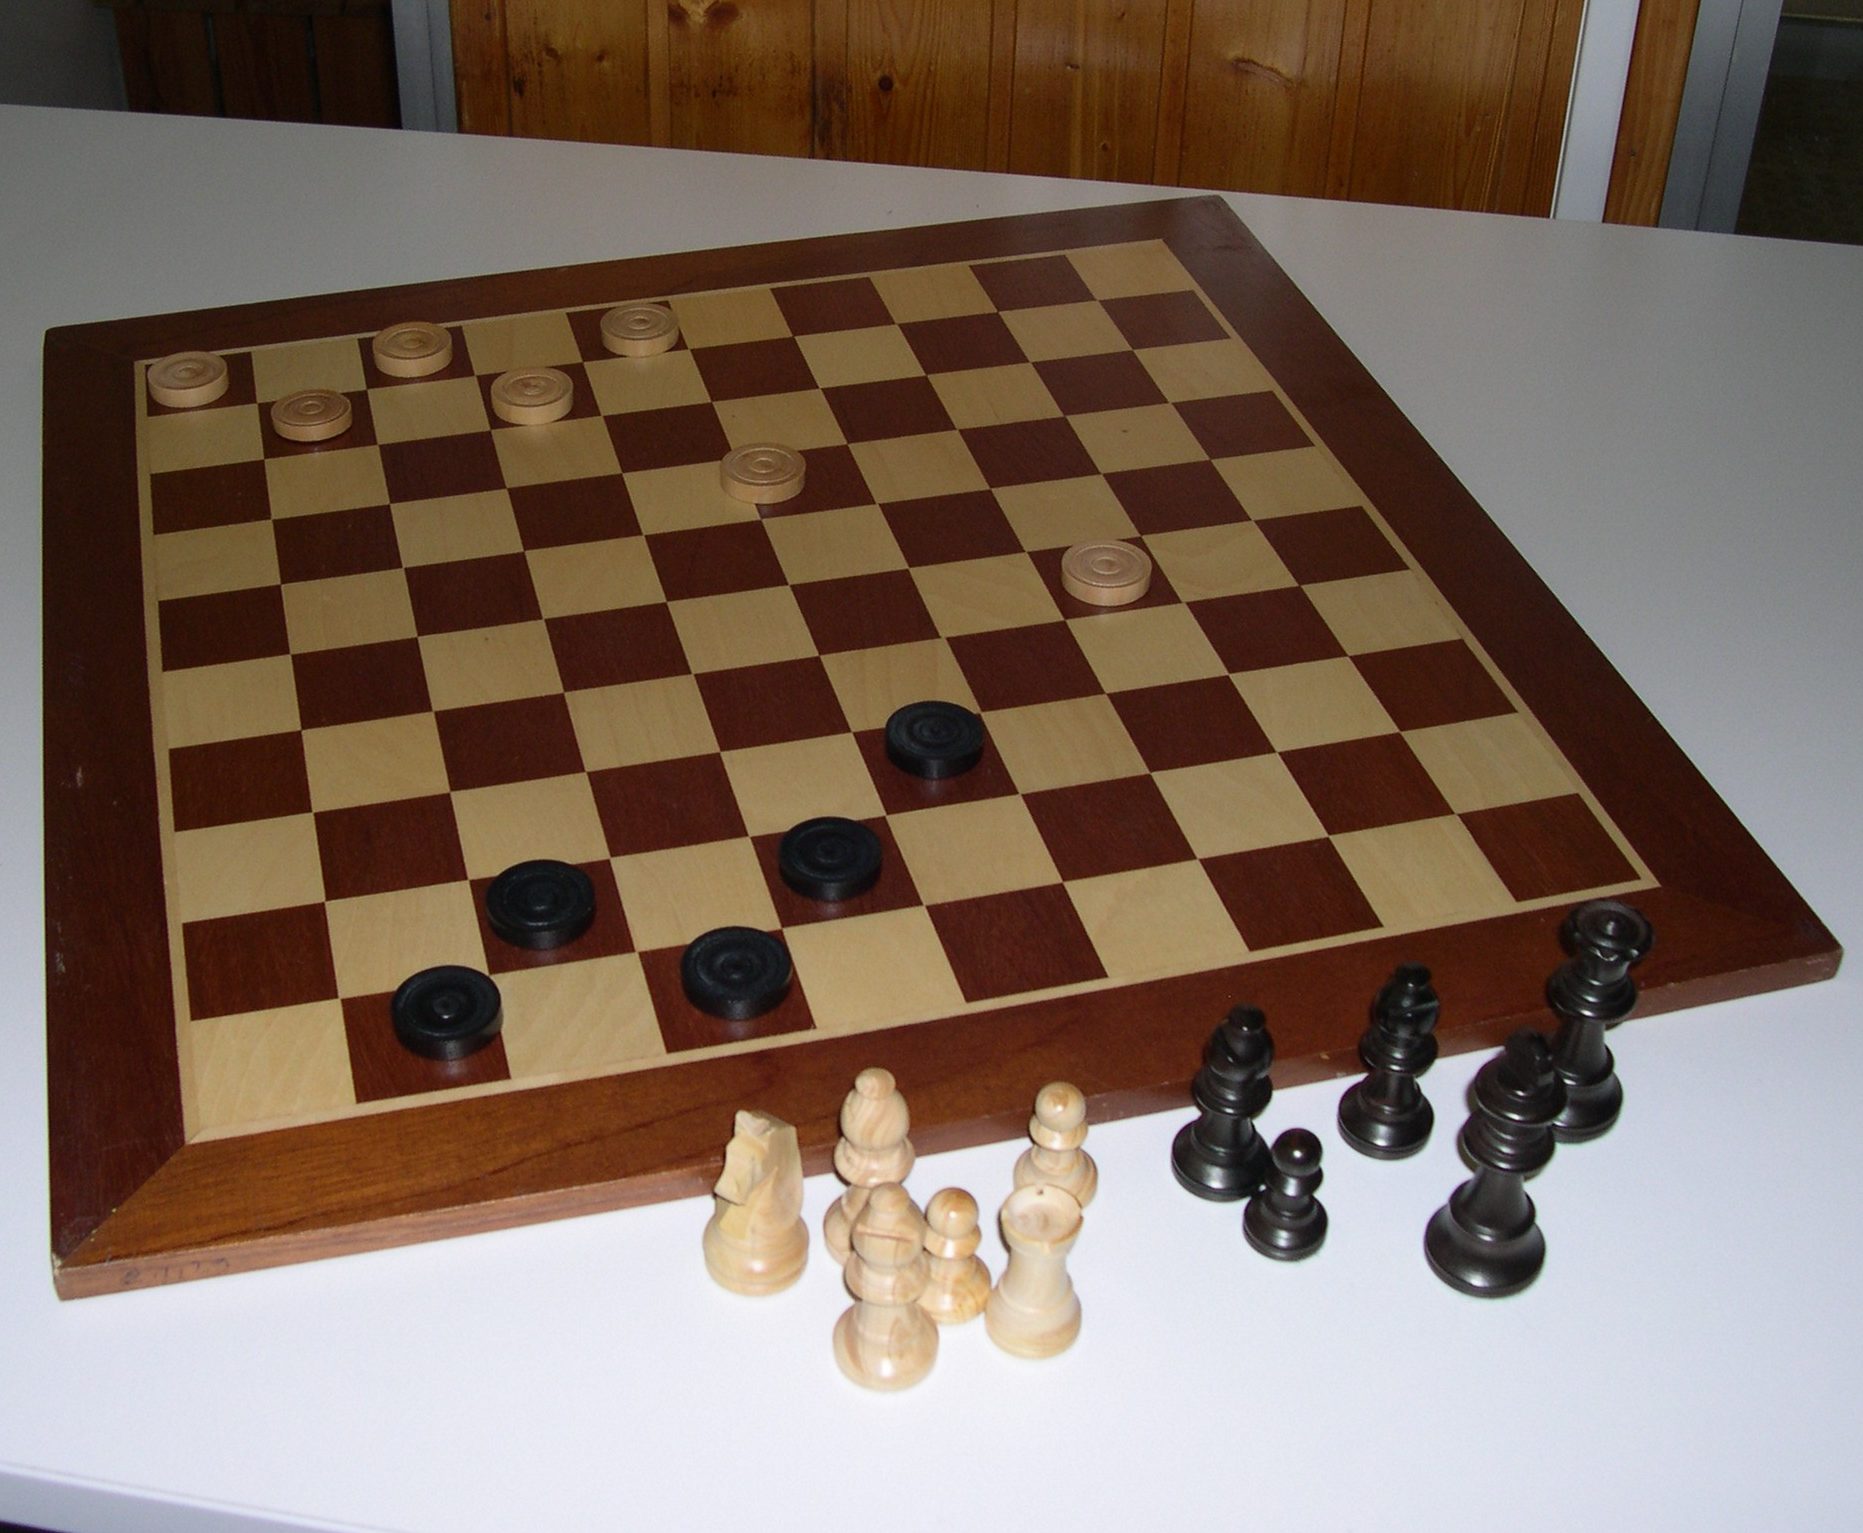 Dames et échecs géant